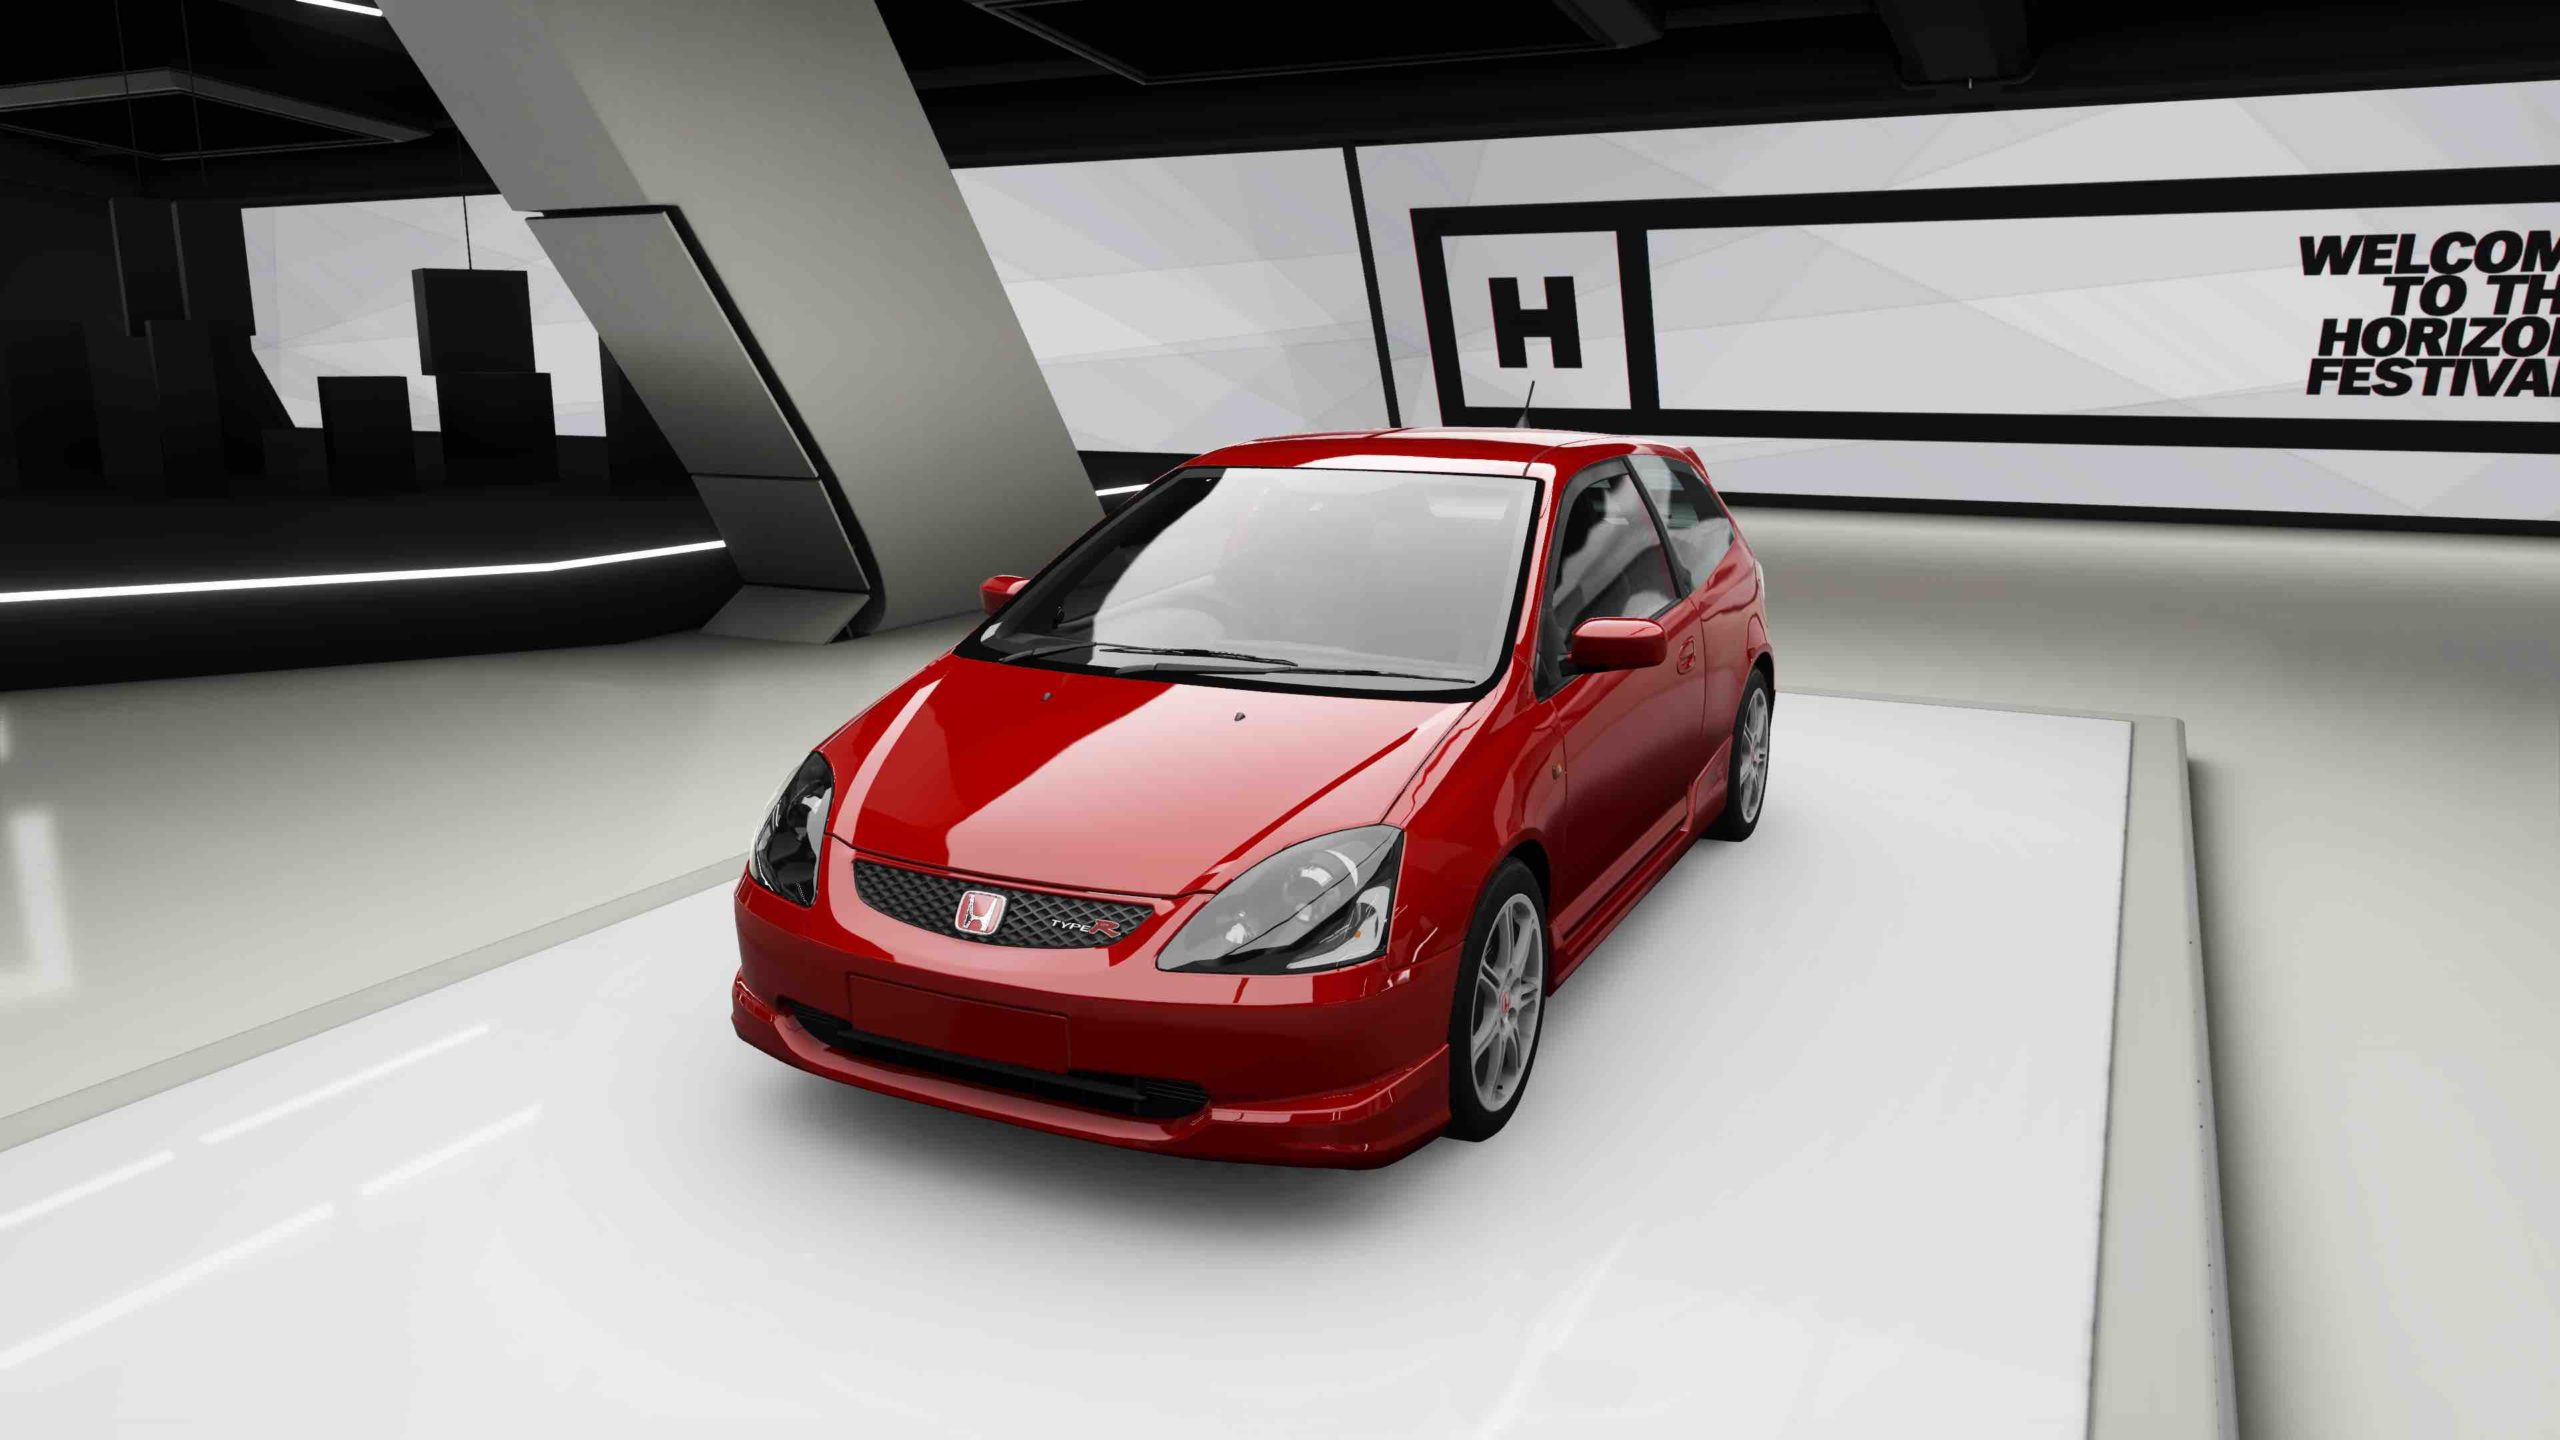 Forza-Horizon-4-Honda-Civic-Type-R-2004